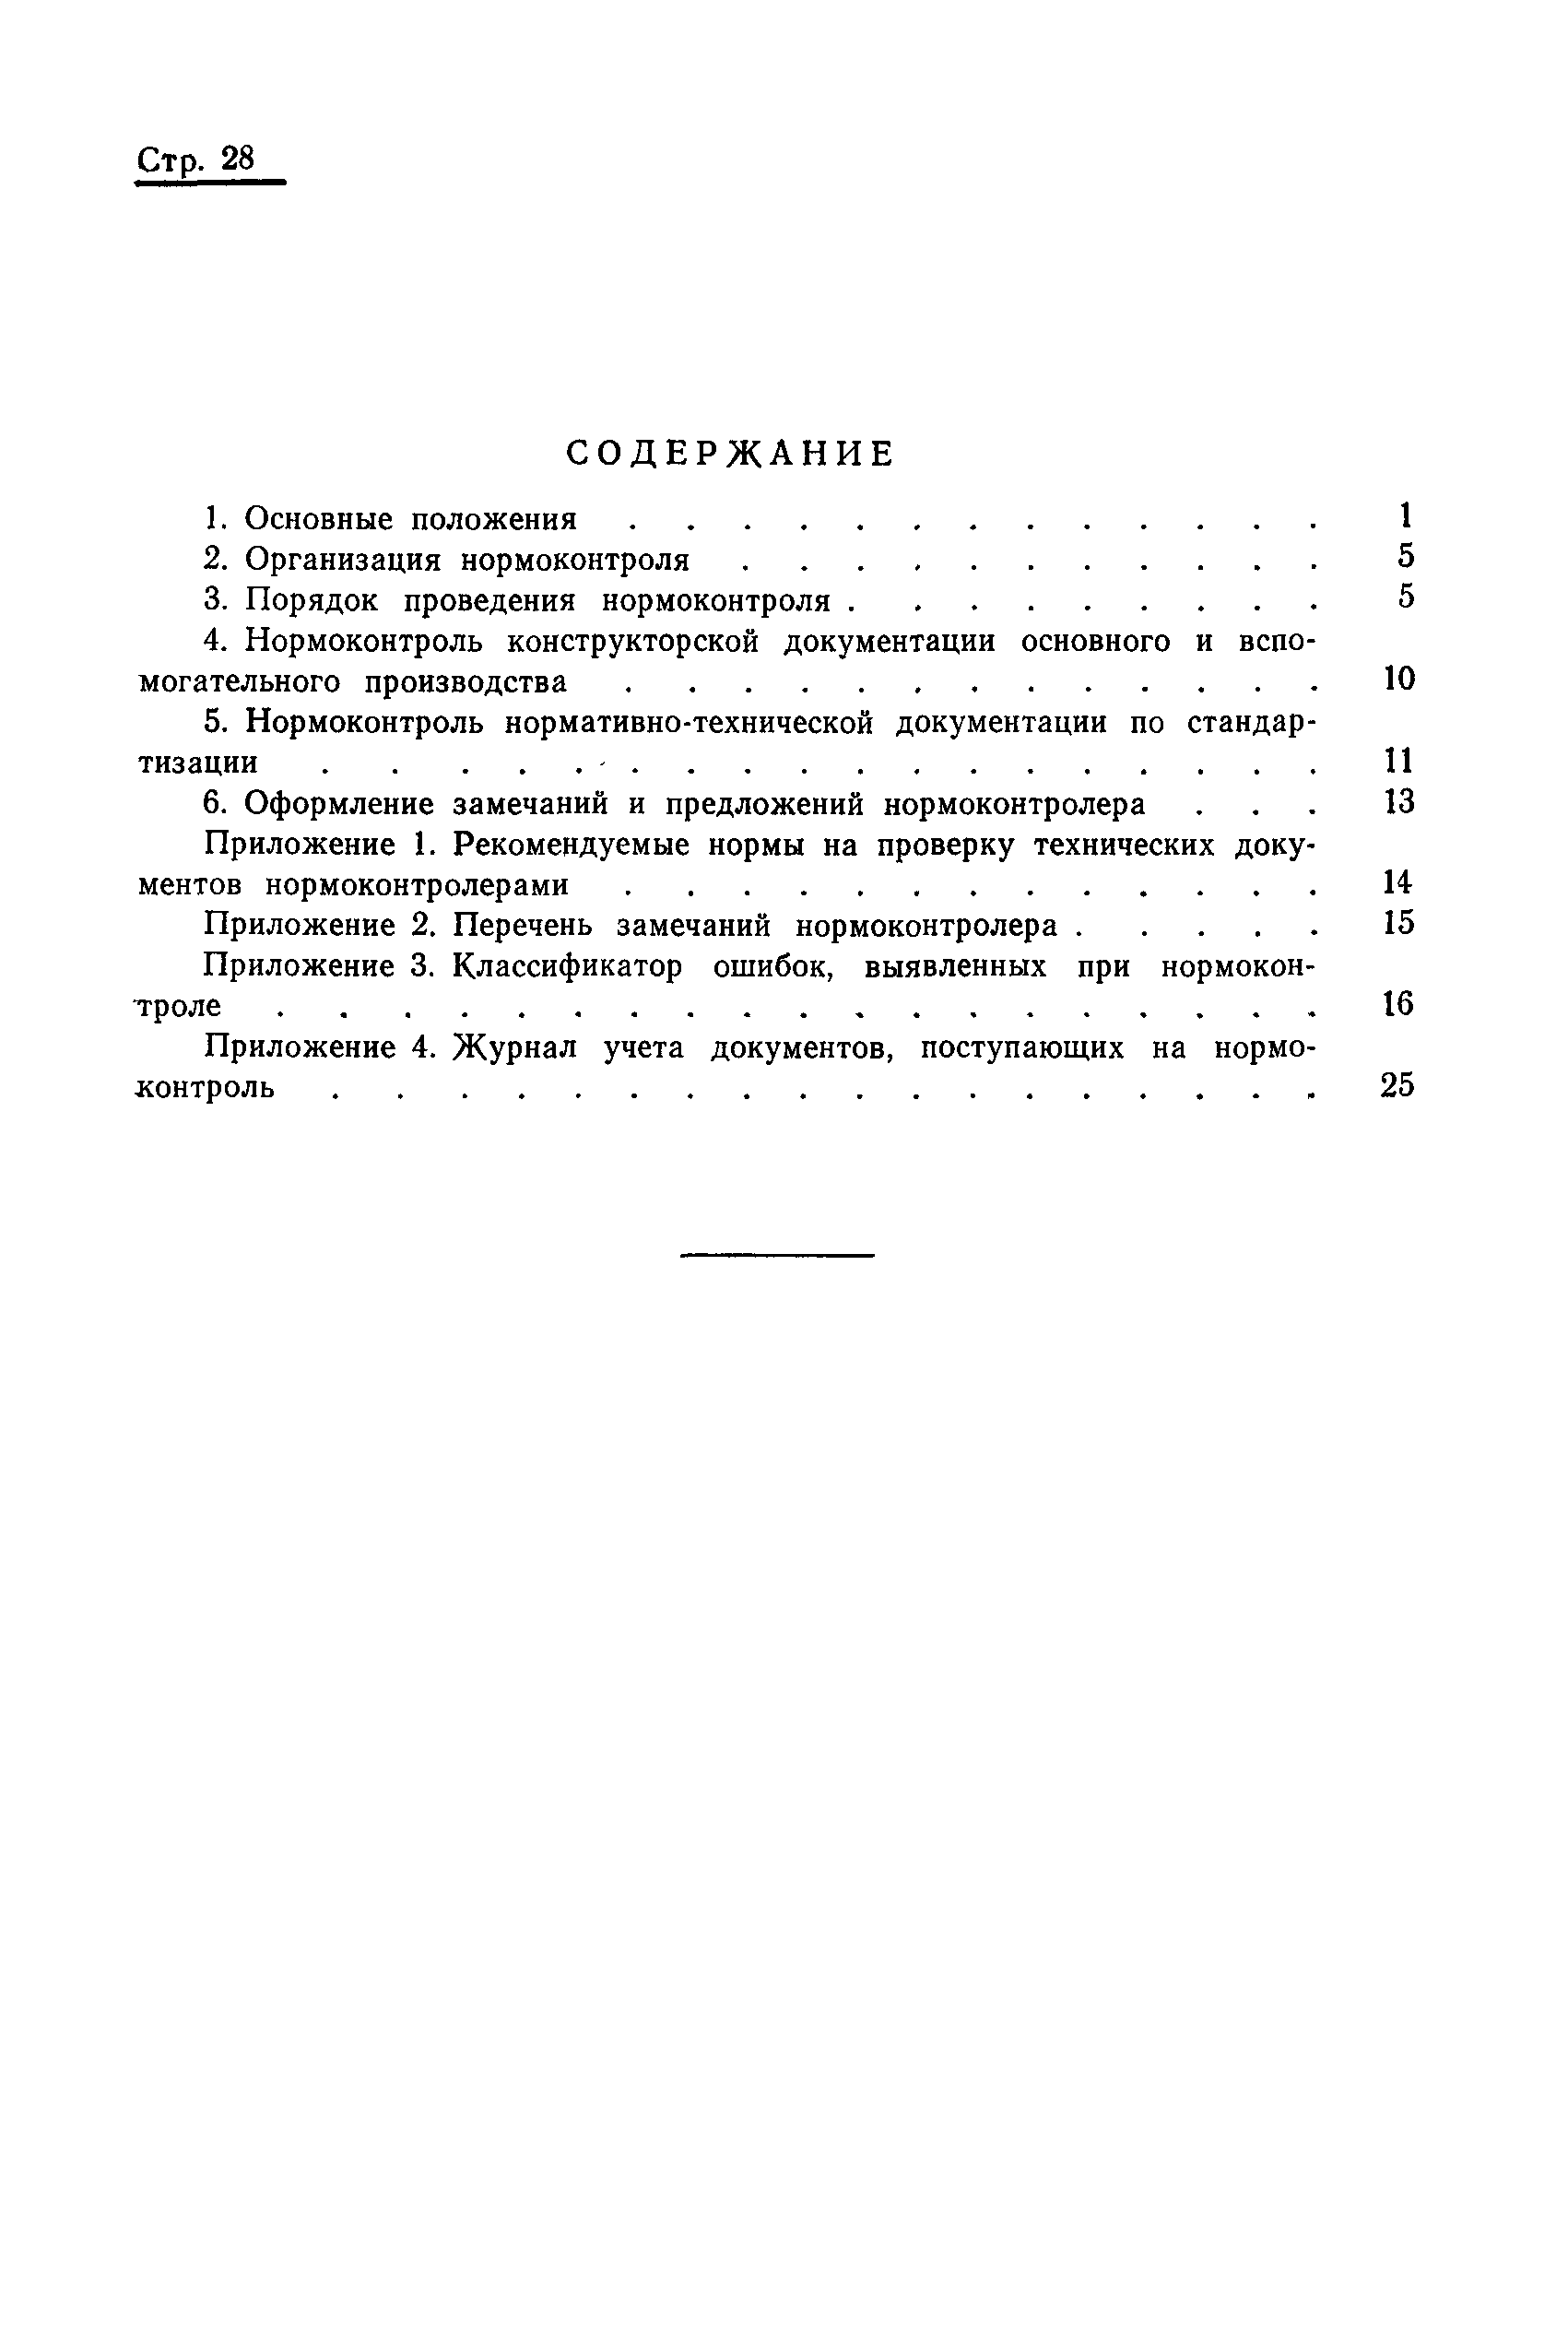 ОСТ 108.001.17-82